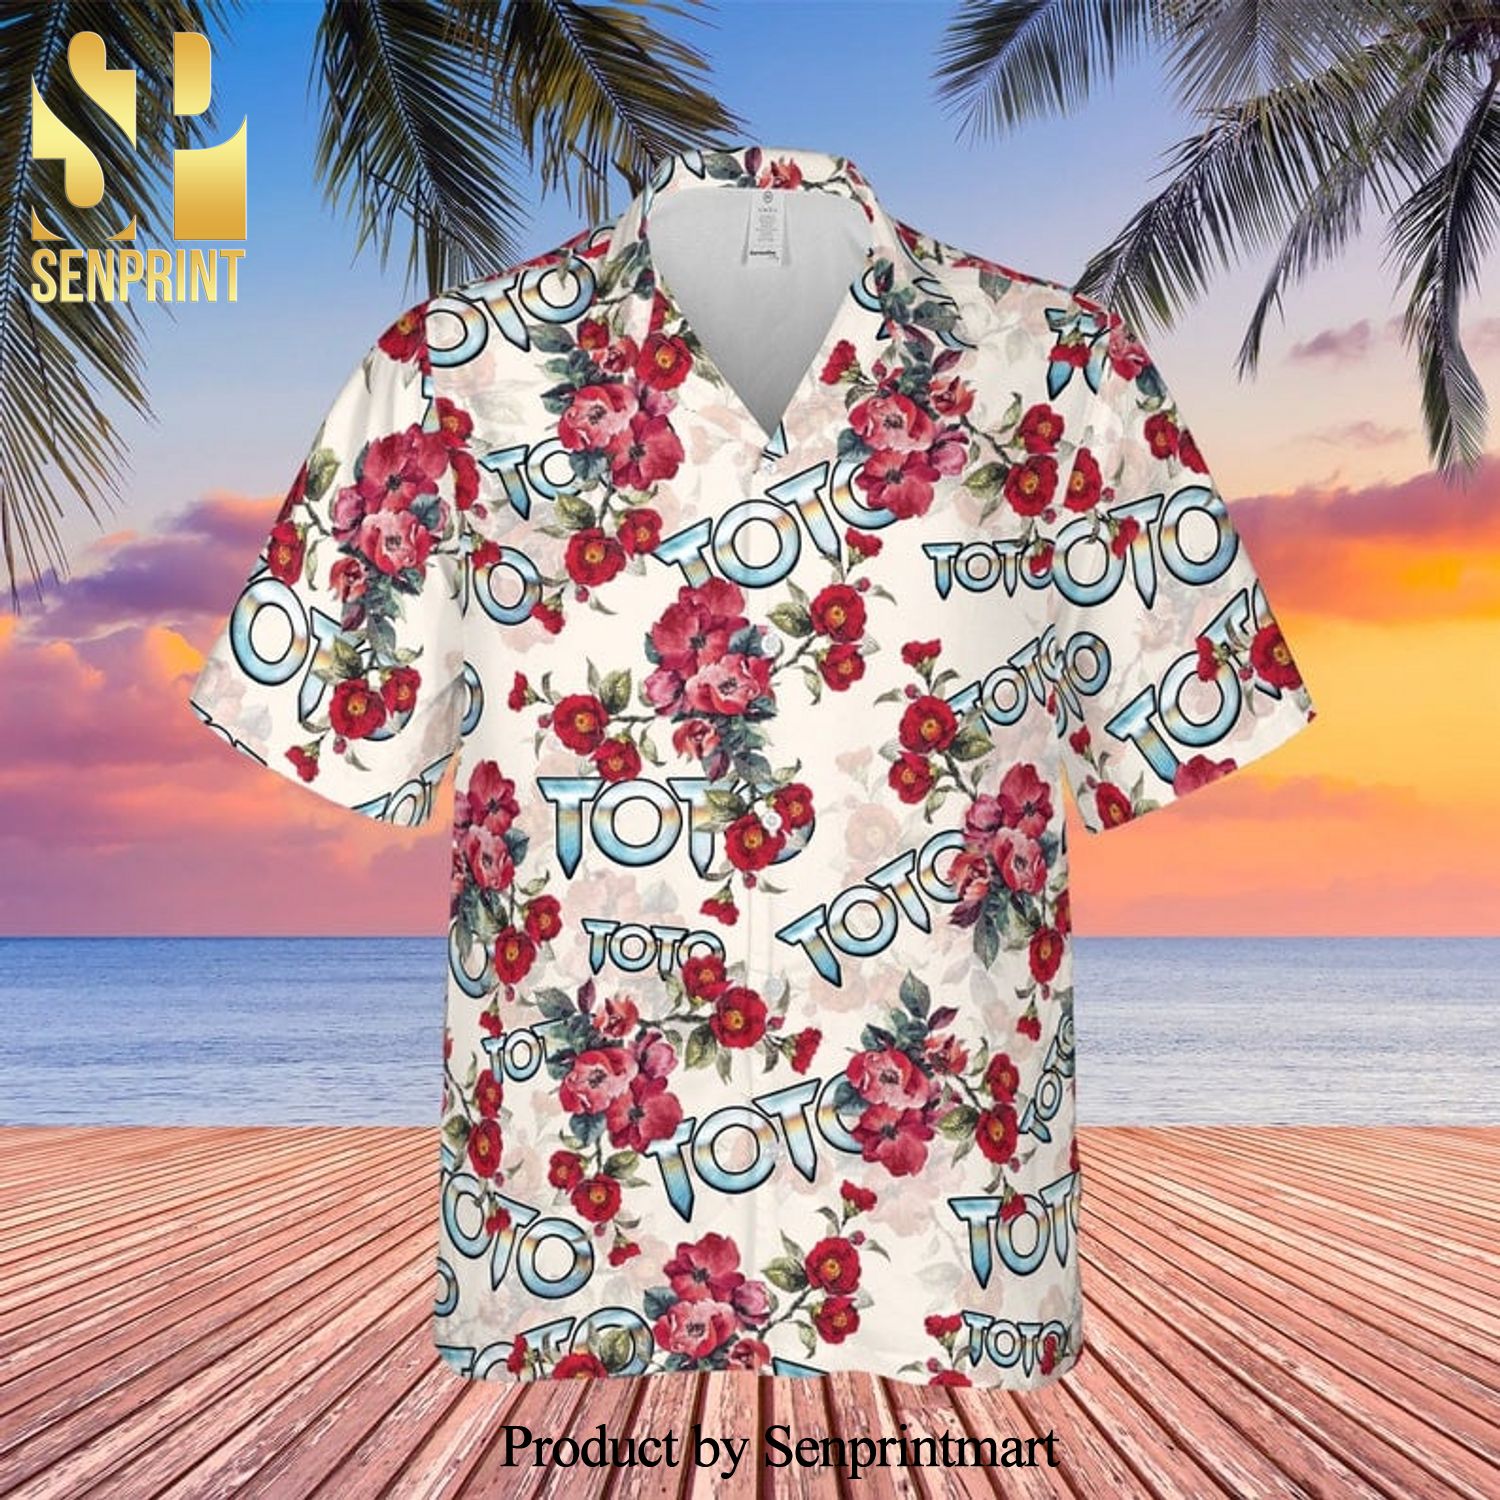 Toto Rock Band And Floral Pattern Full Printing Hawaiian Shirt – White